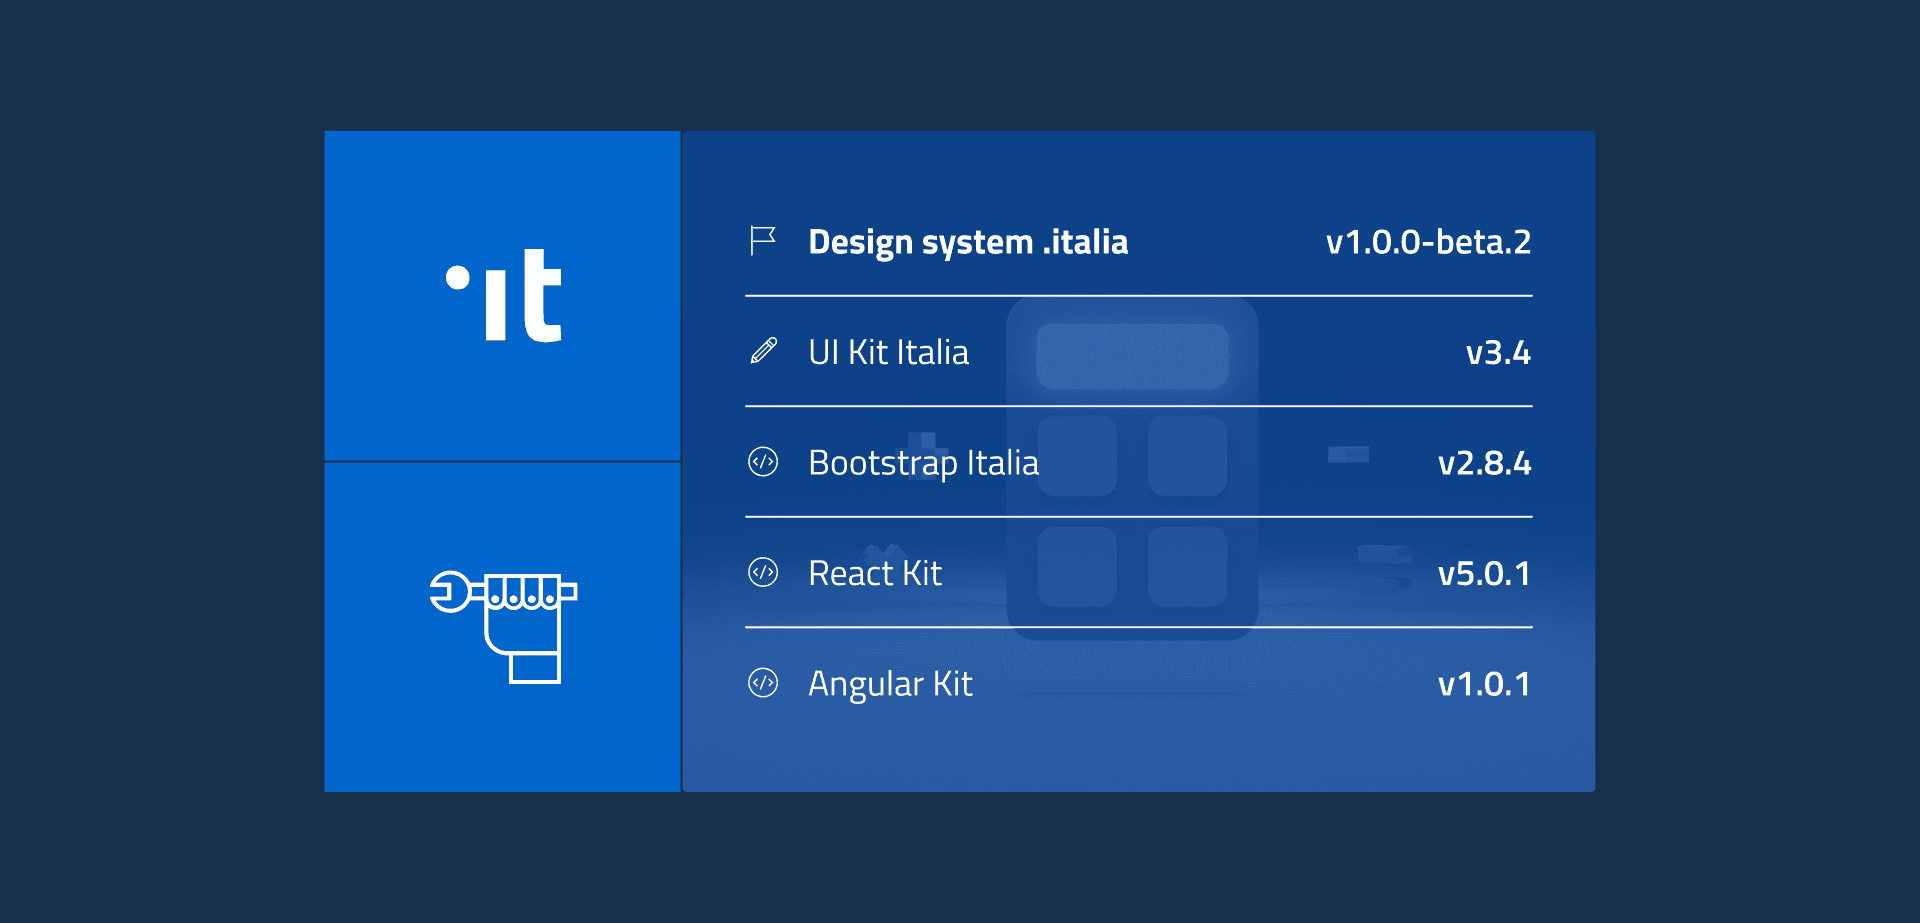 Design system .italia v1.0.0-beta.2 - UI Kit Italia v3.4 - Bootstrap Italia v2.8.4 - React Kit v5.0.1 - Angular Kit v1.0.1